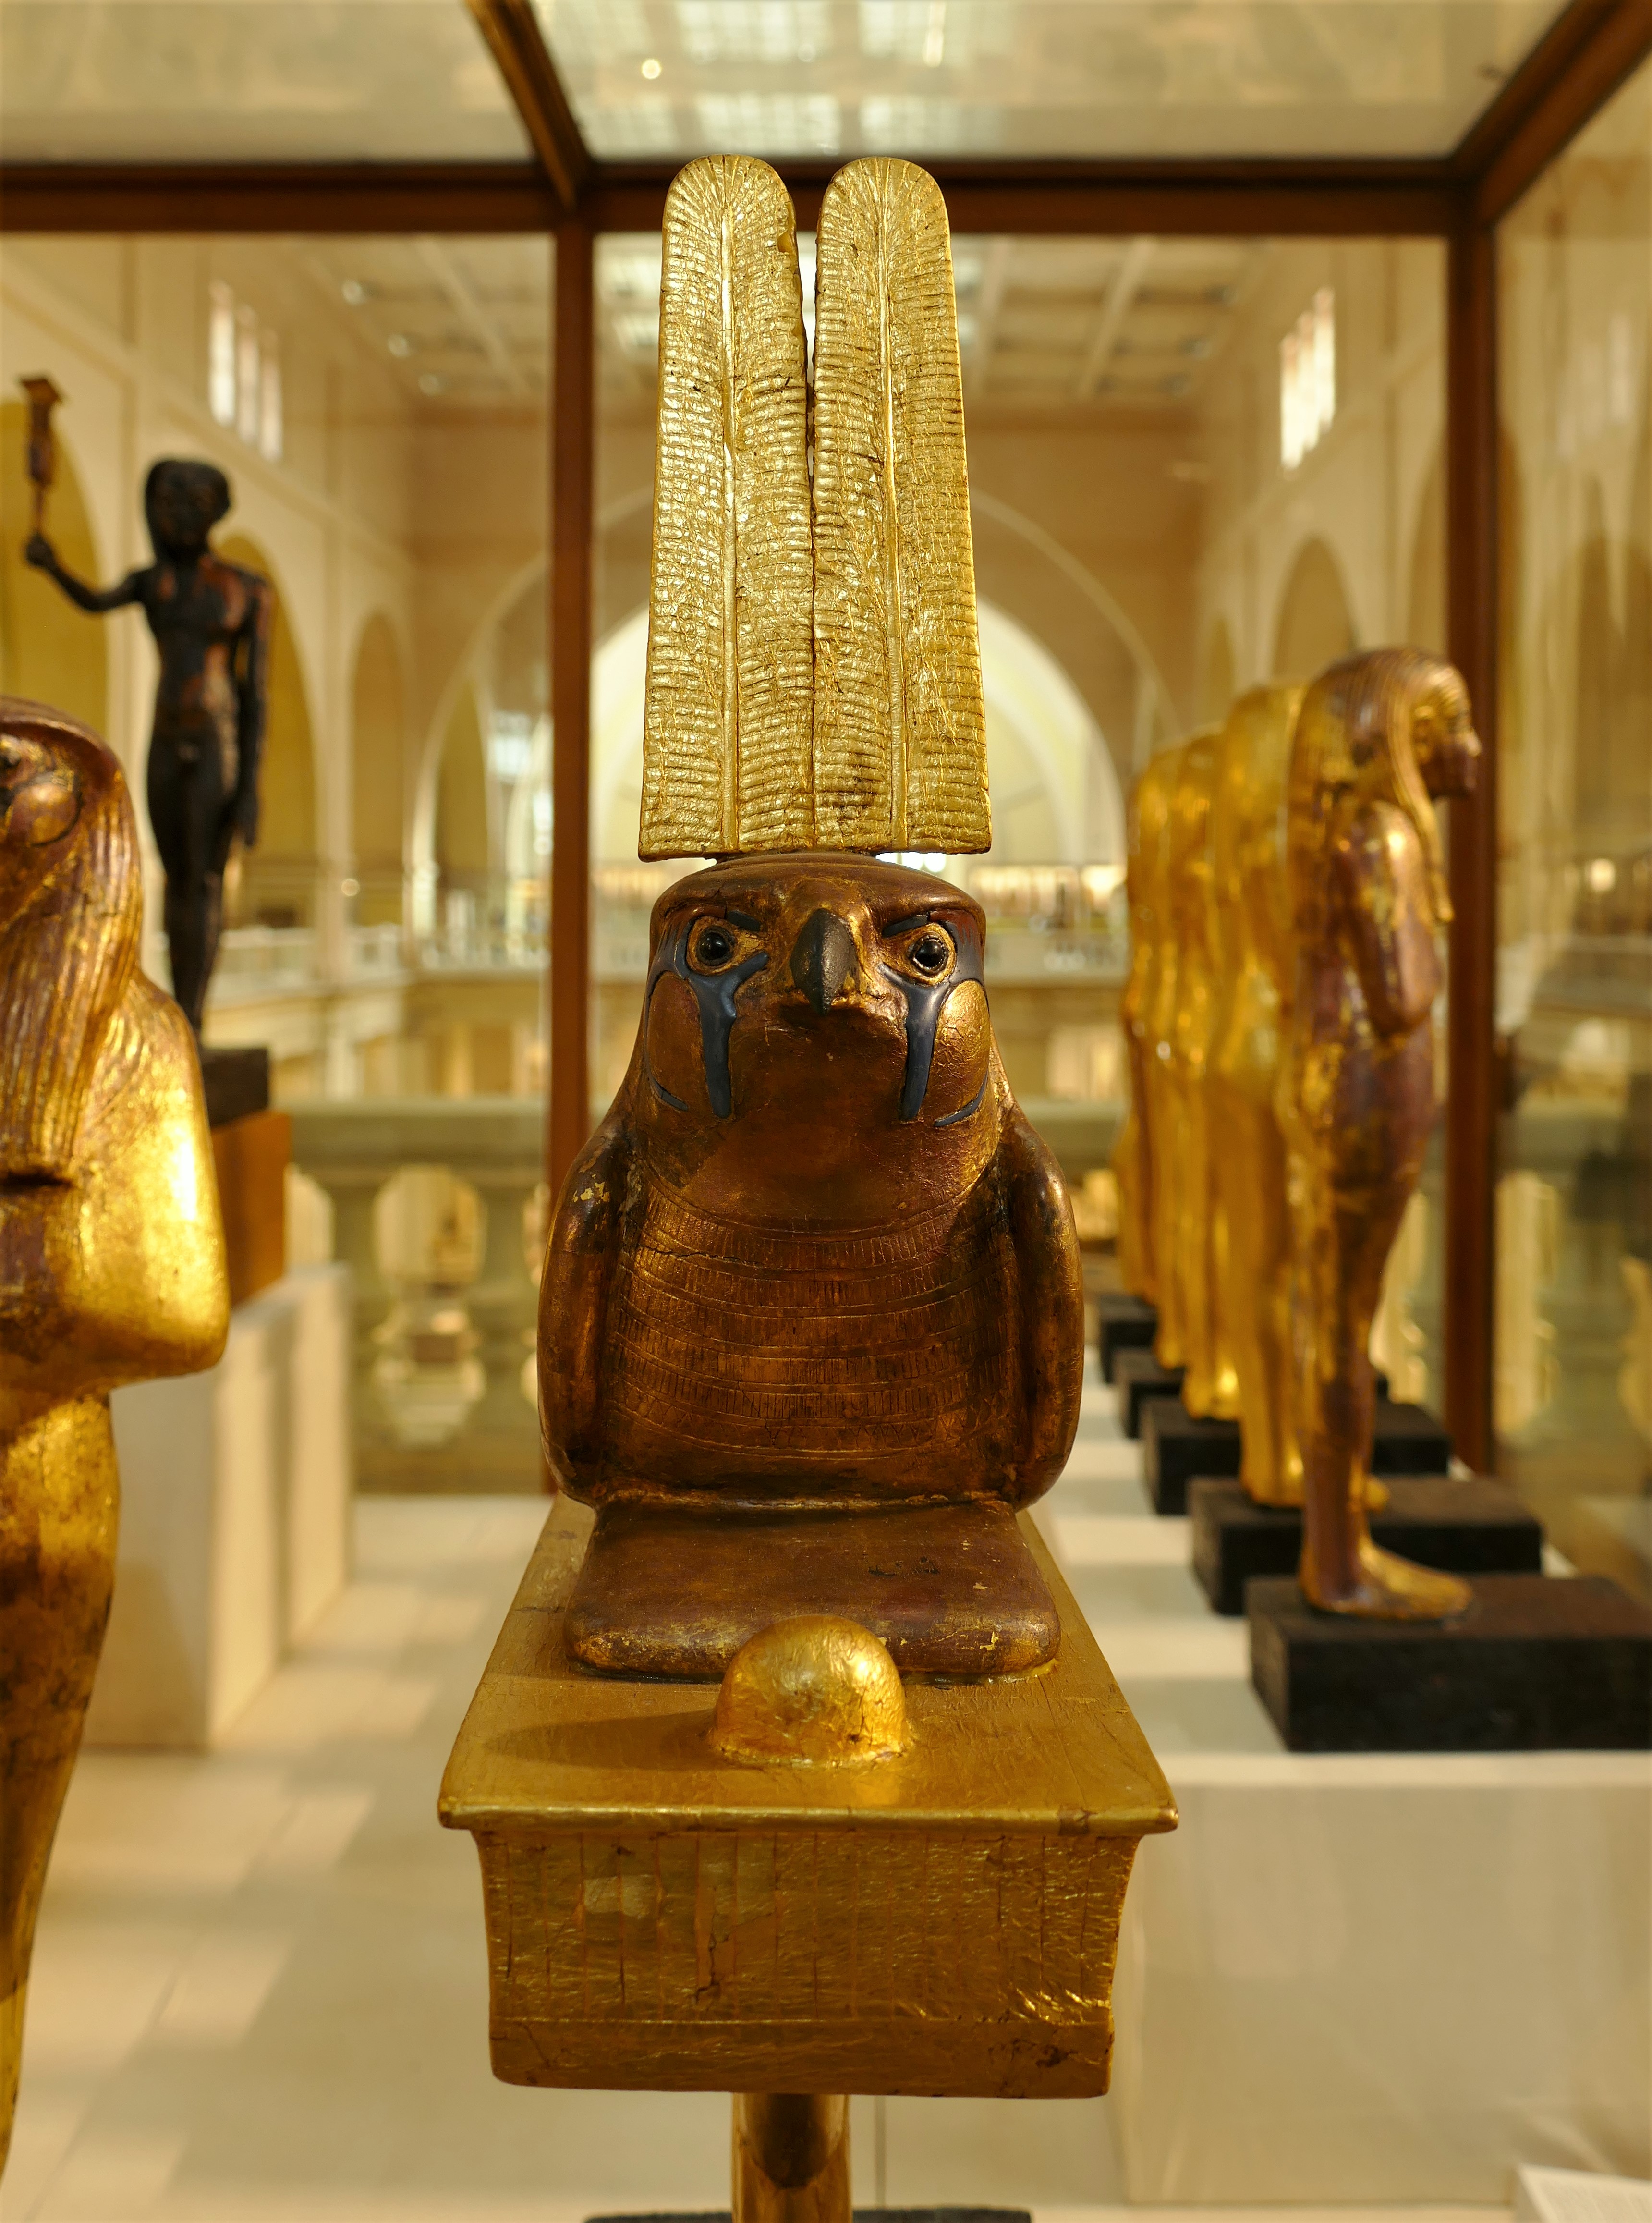 埃及(五)埃及博物馆下篇―图坦卡蒙宝藏